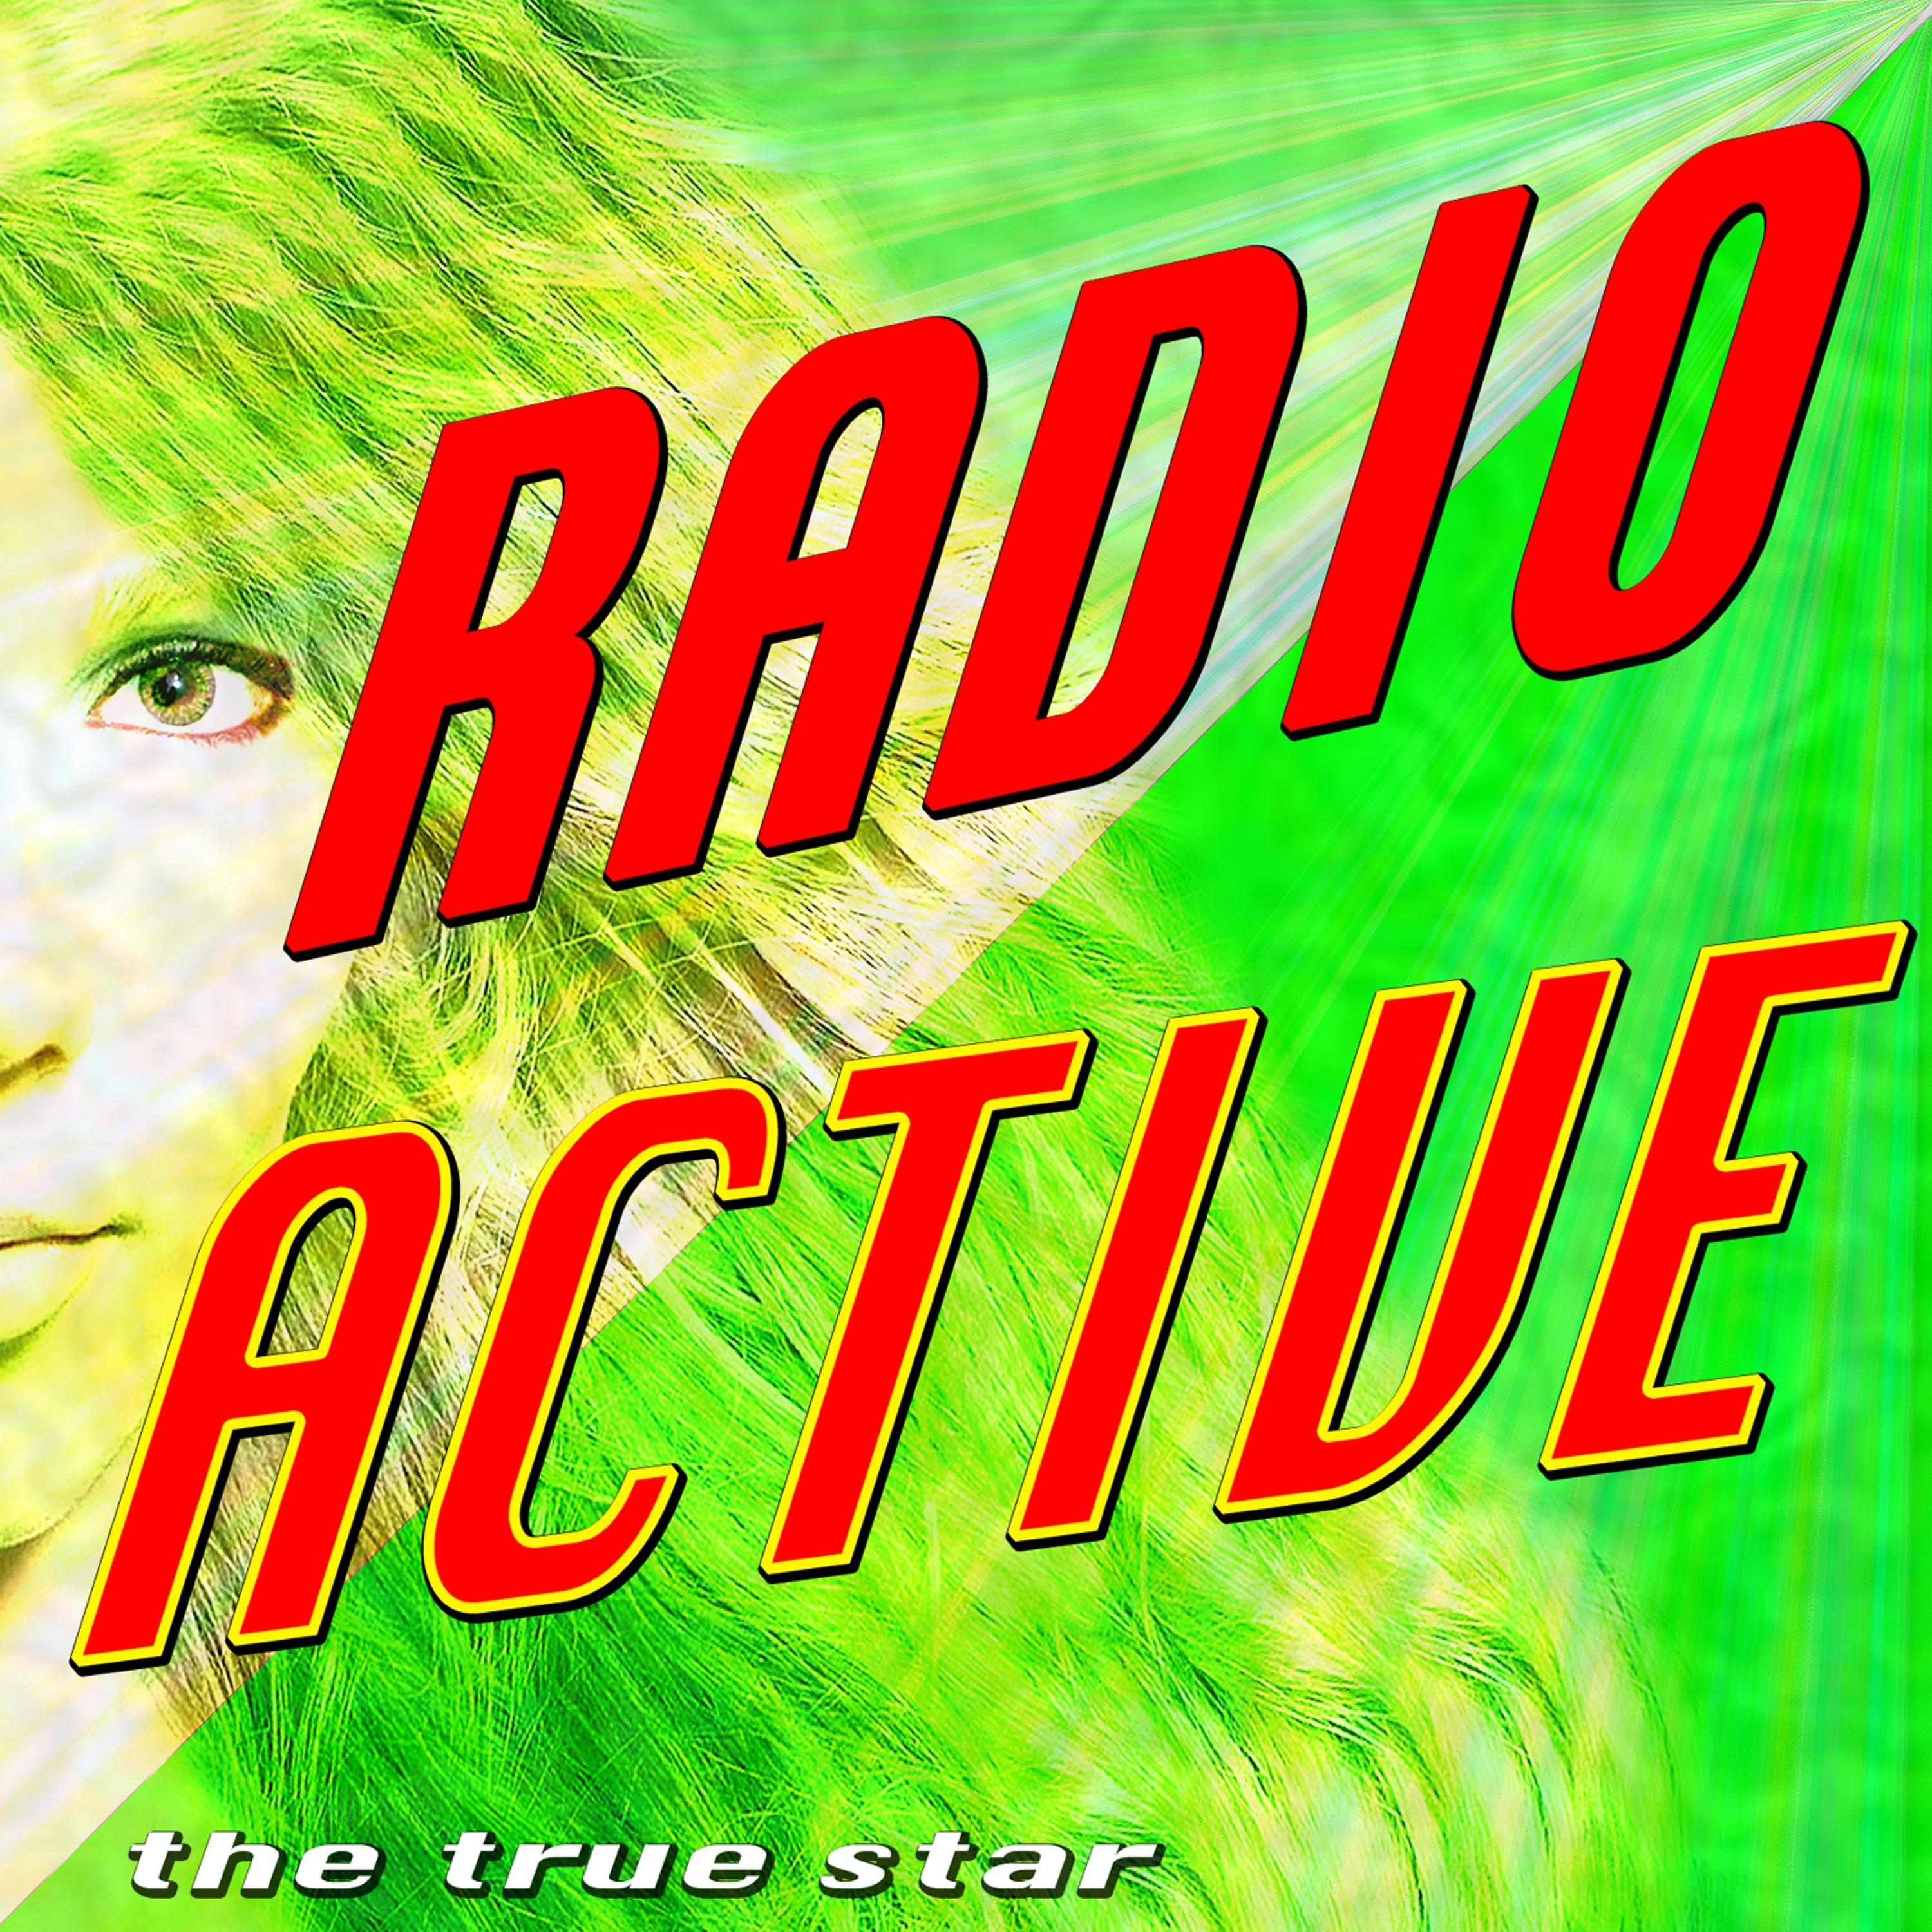 Постер альбома Radioactive